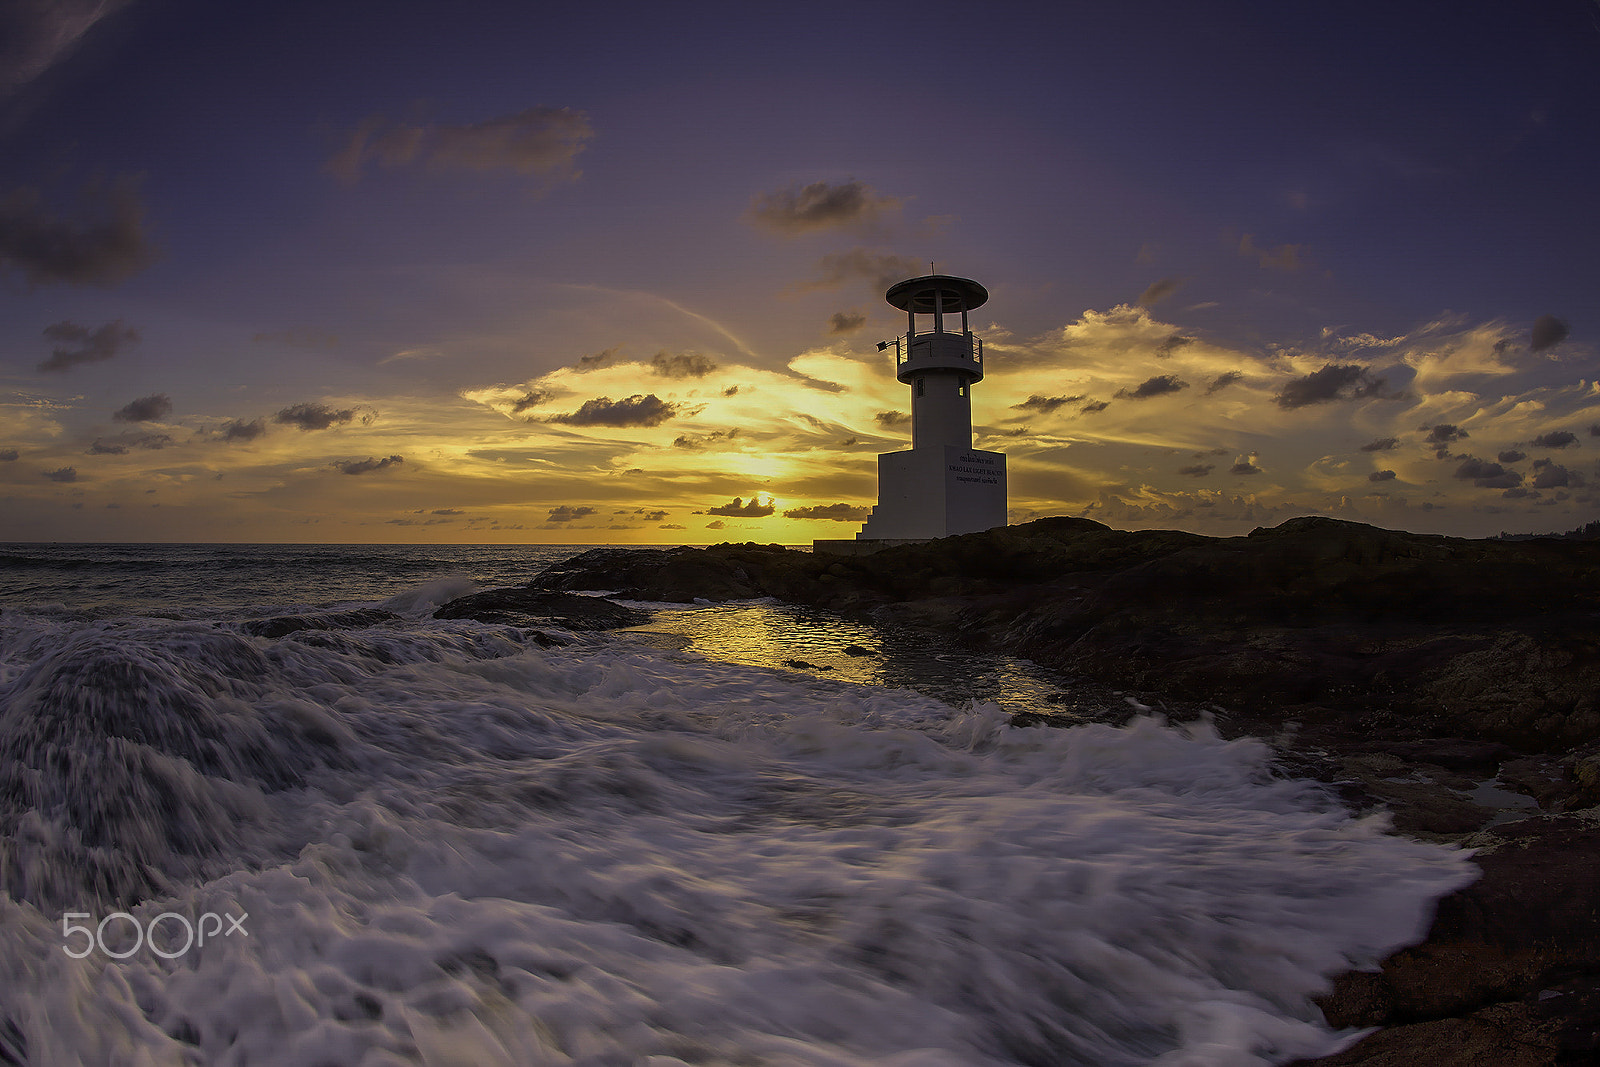 Nikon D610 + Nikon AF Fisheye-Nikkor 16mm F2.8D sample photo. Lighthouse @ sunset photography